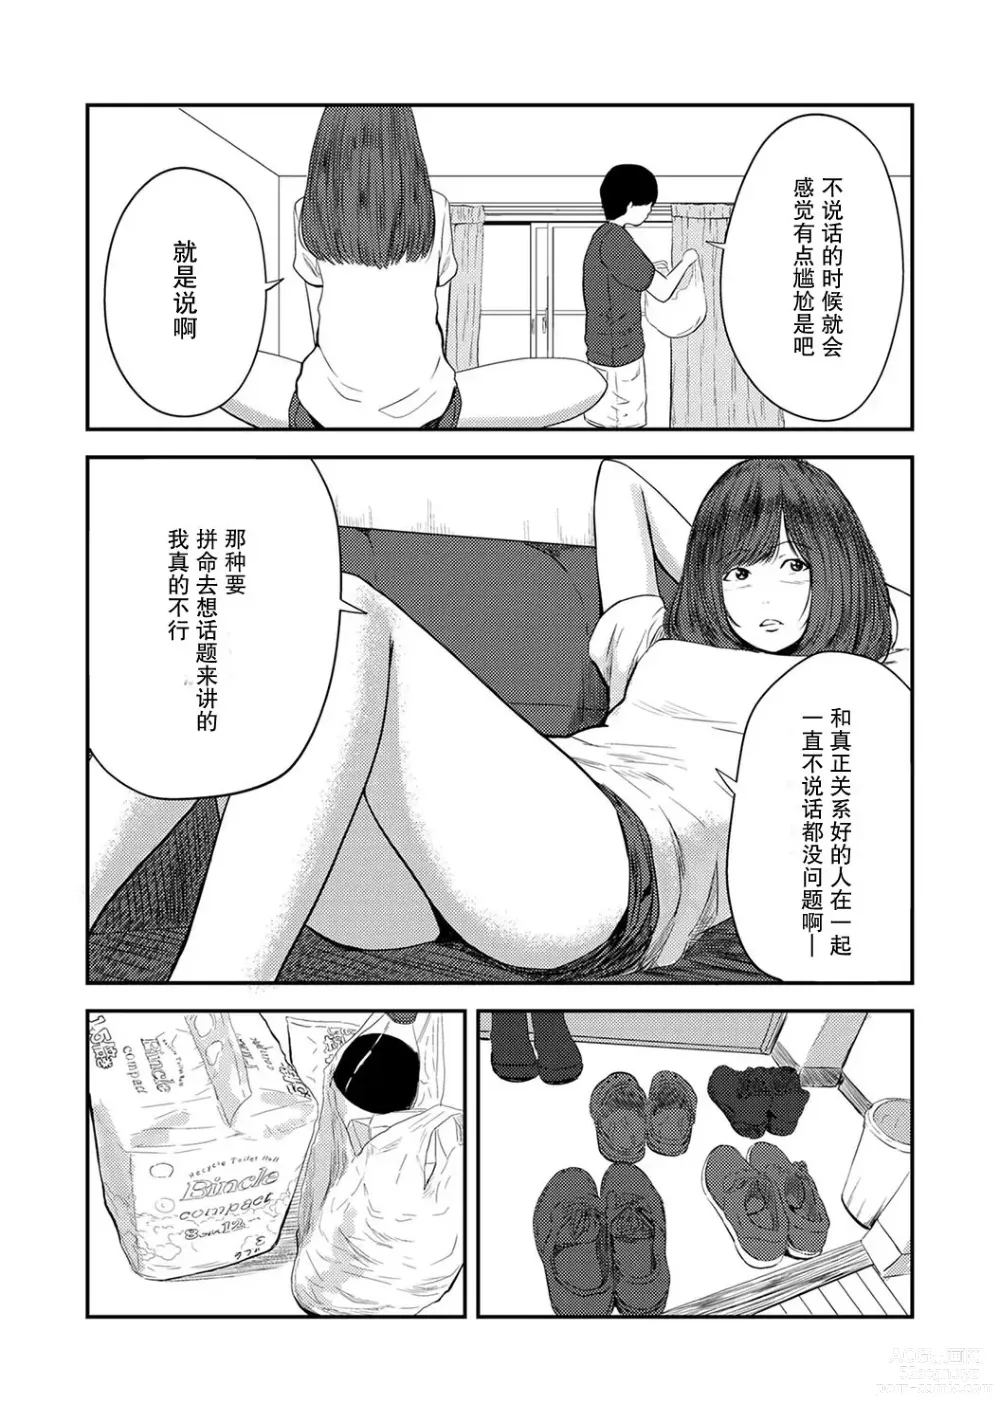 Page 7 of manga 交往5年后我们的性福生活 第1集